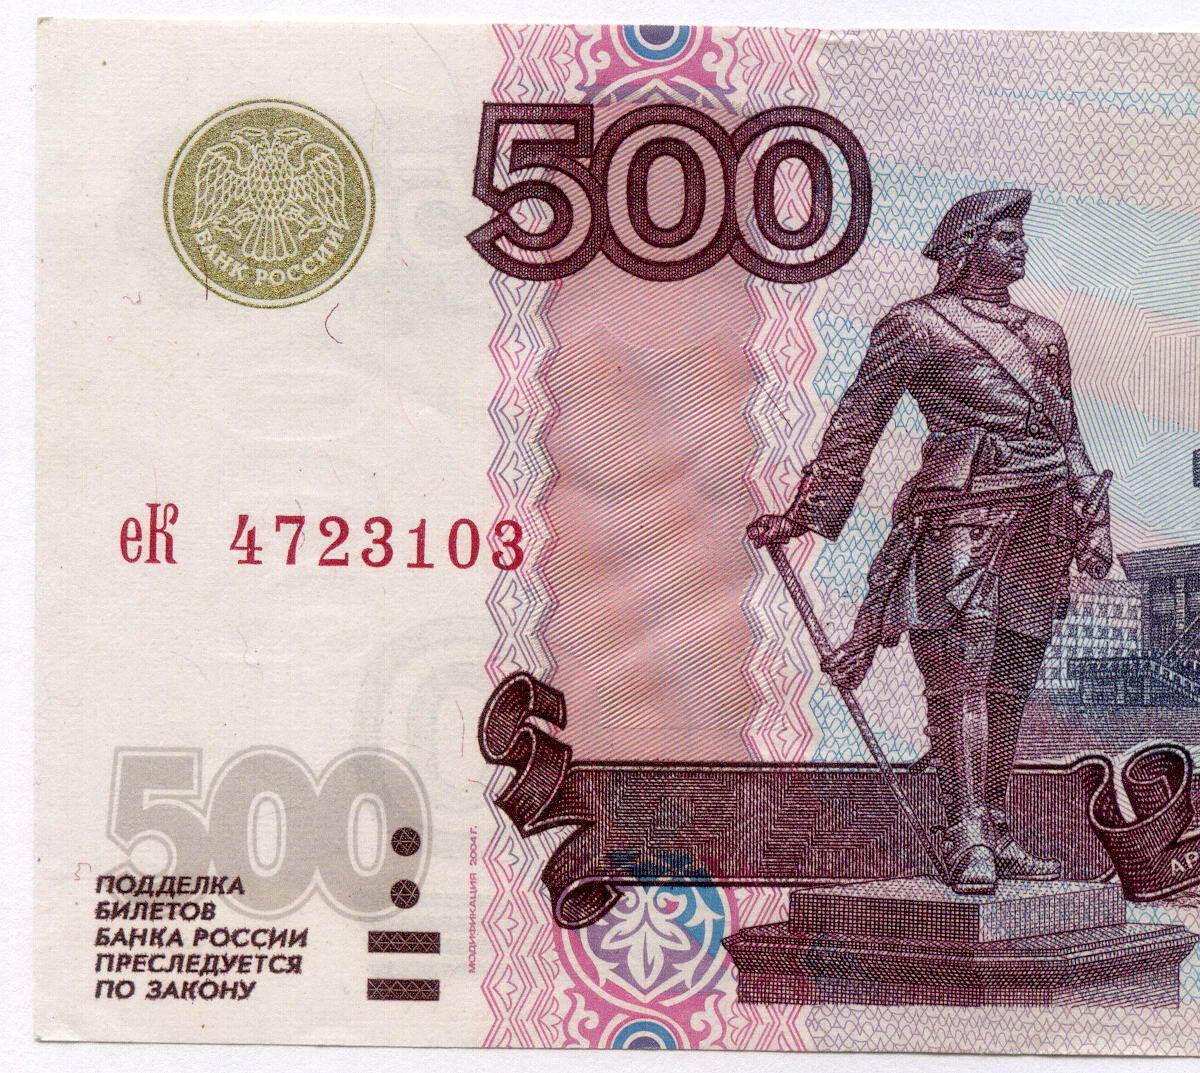 500 рублей действующие. 500 Рублей. Купюра 500 рублей. Банкнота 500 рублей. Деньги 500 рублей.